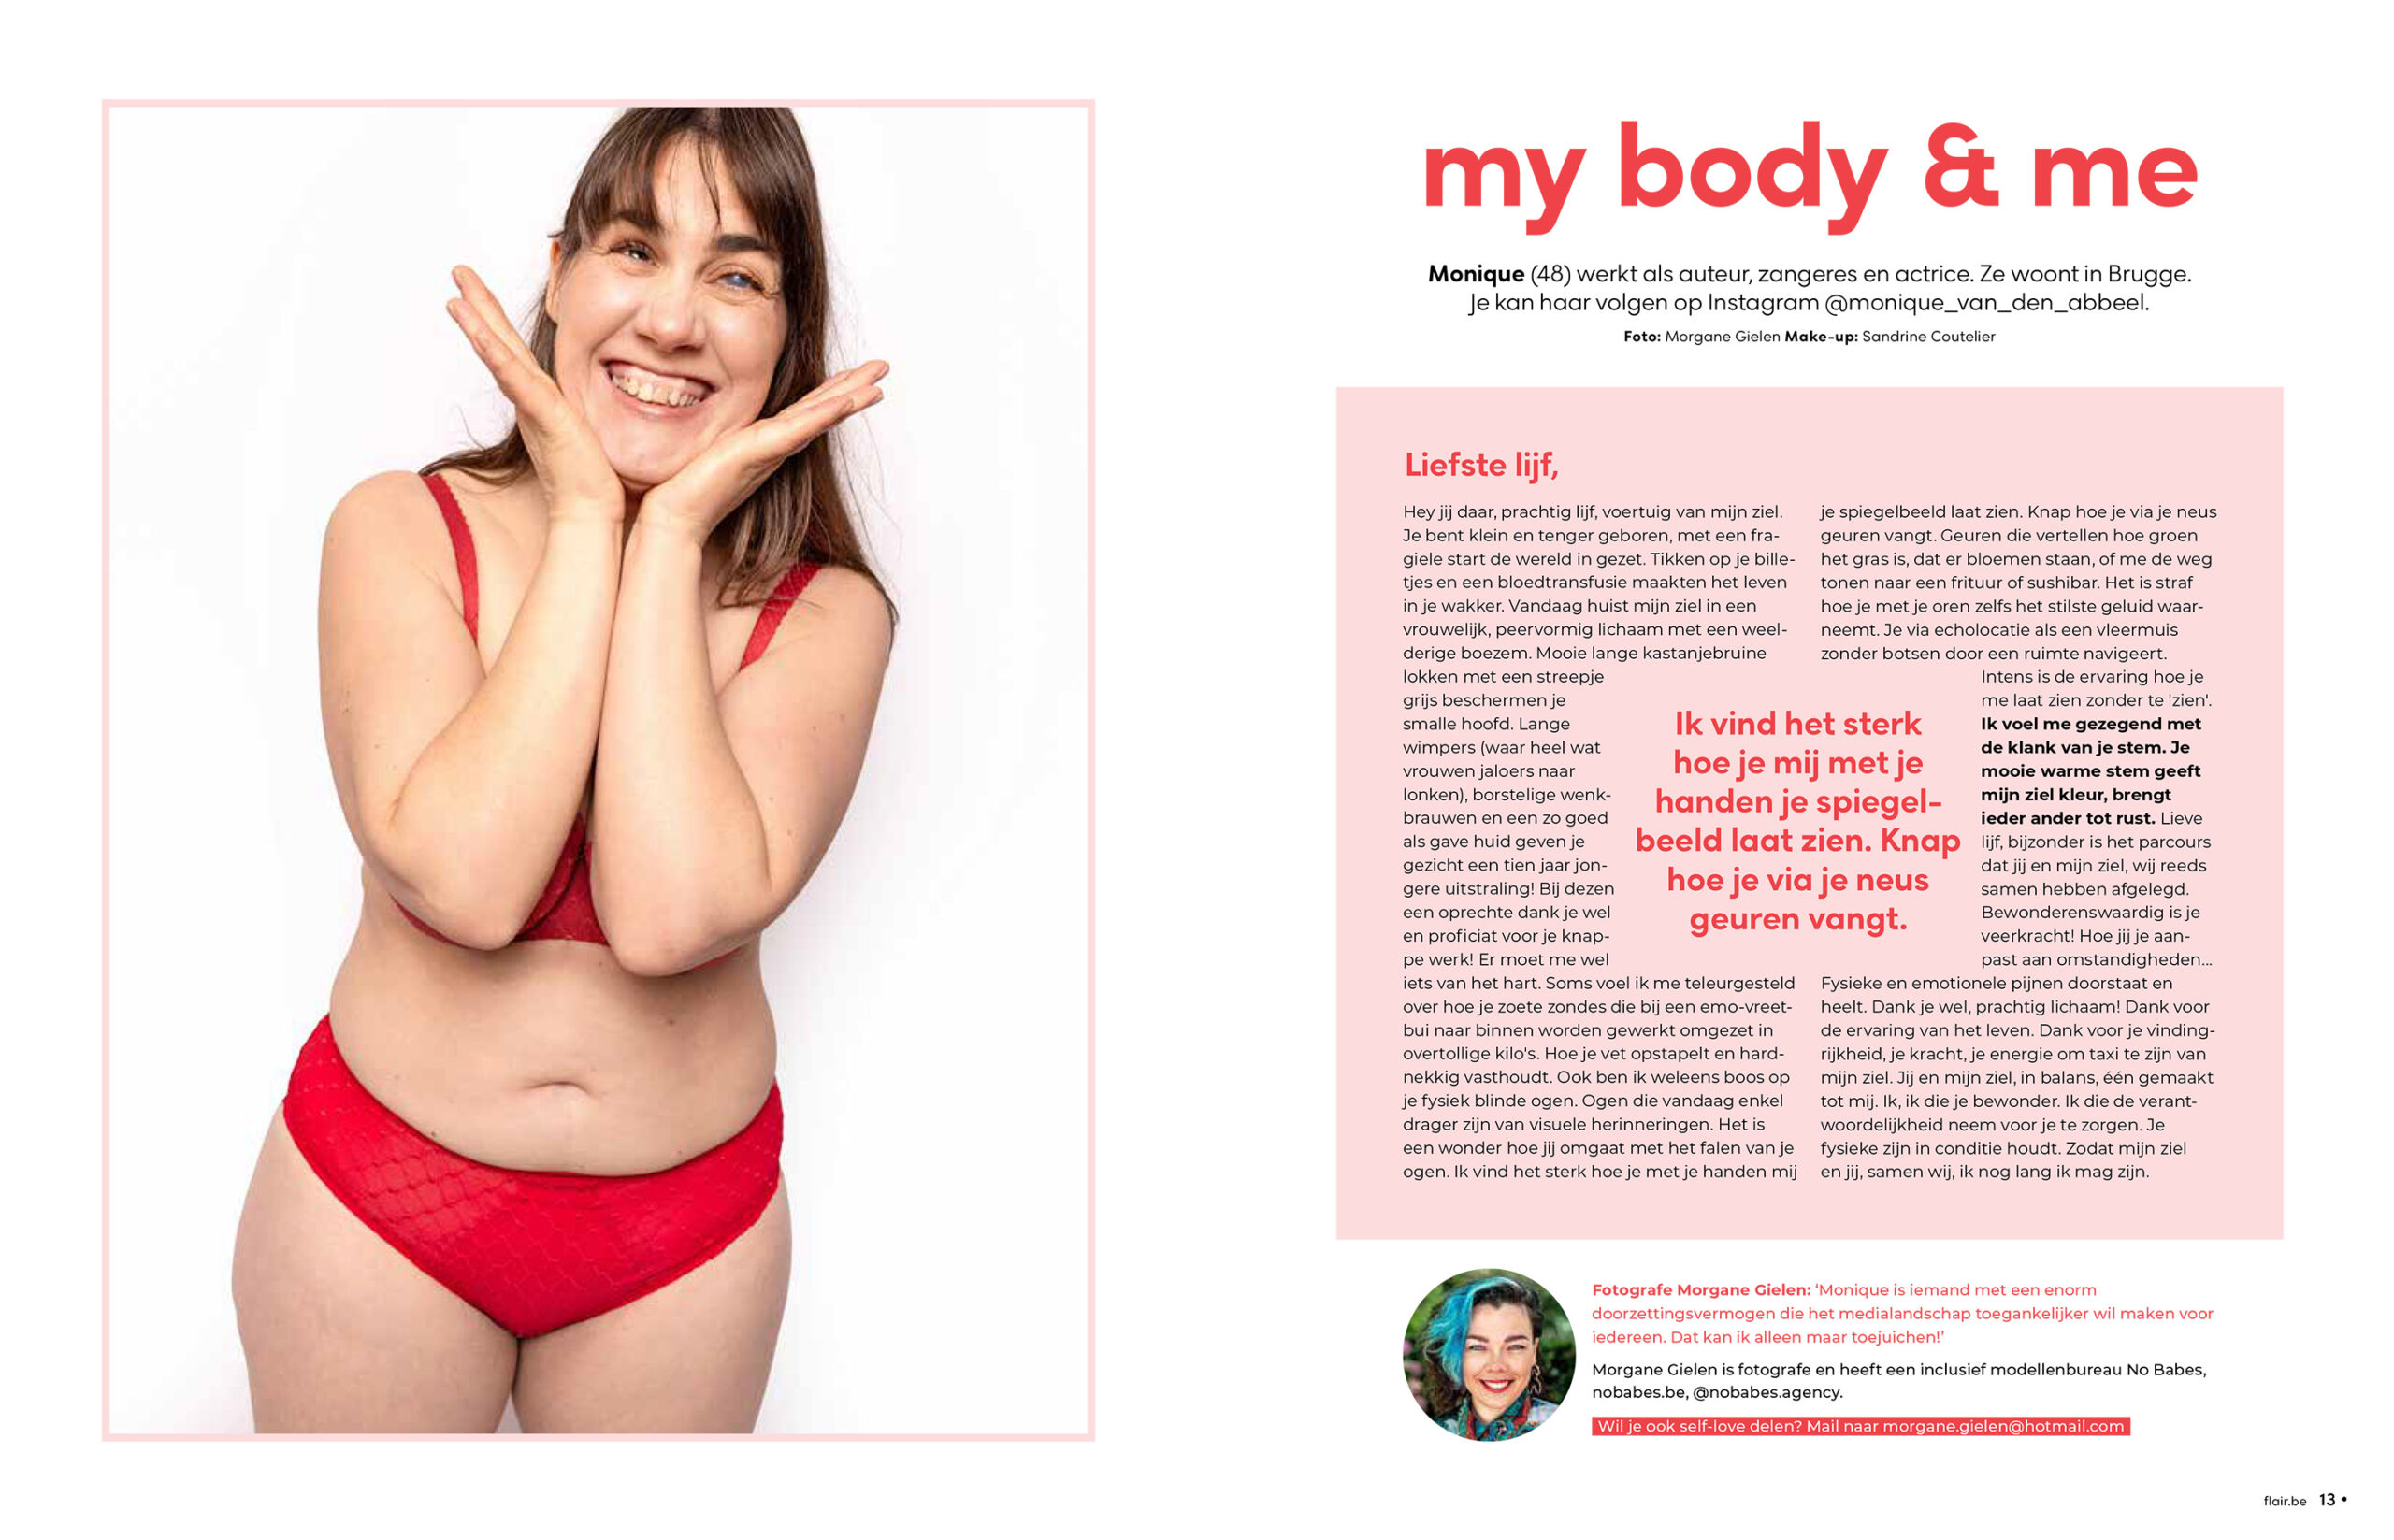 Monique poseert lachend als hoofdafbeelding voor een artikel over body positivity